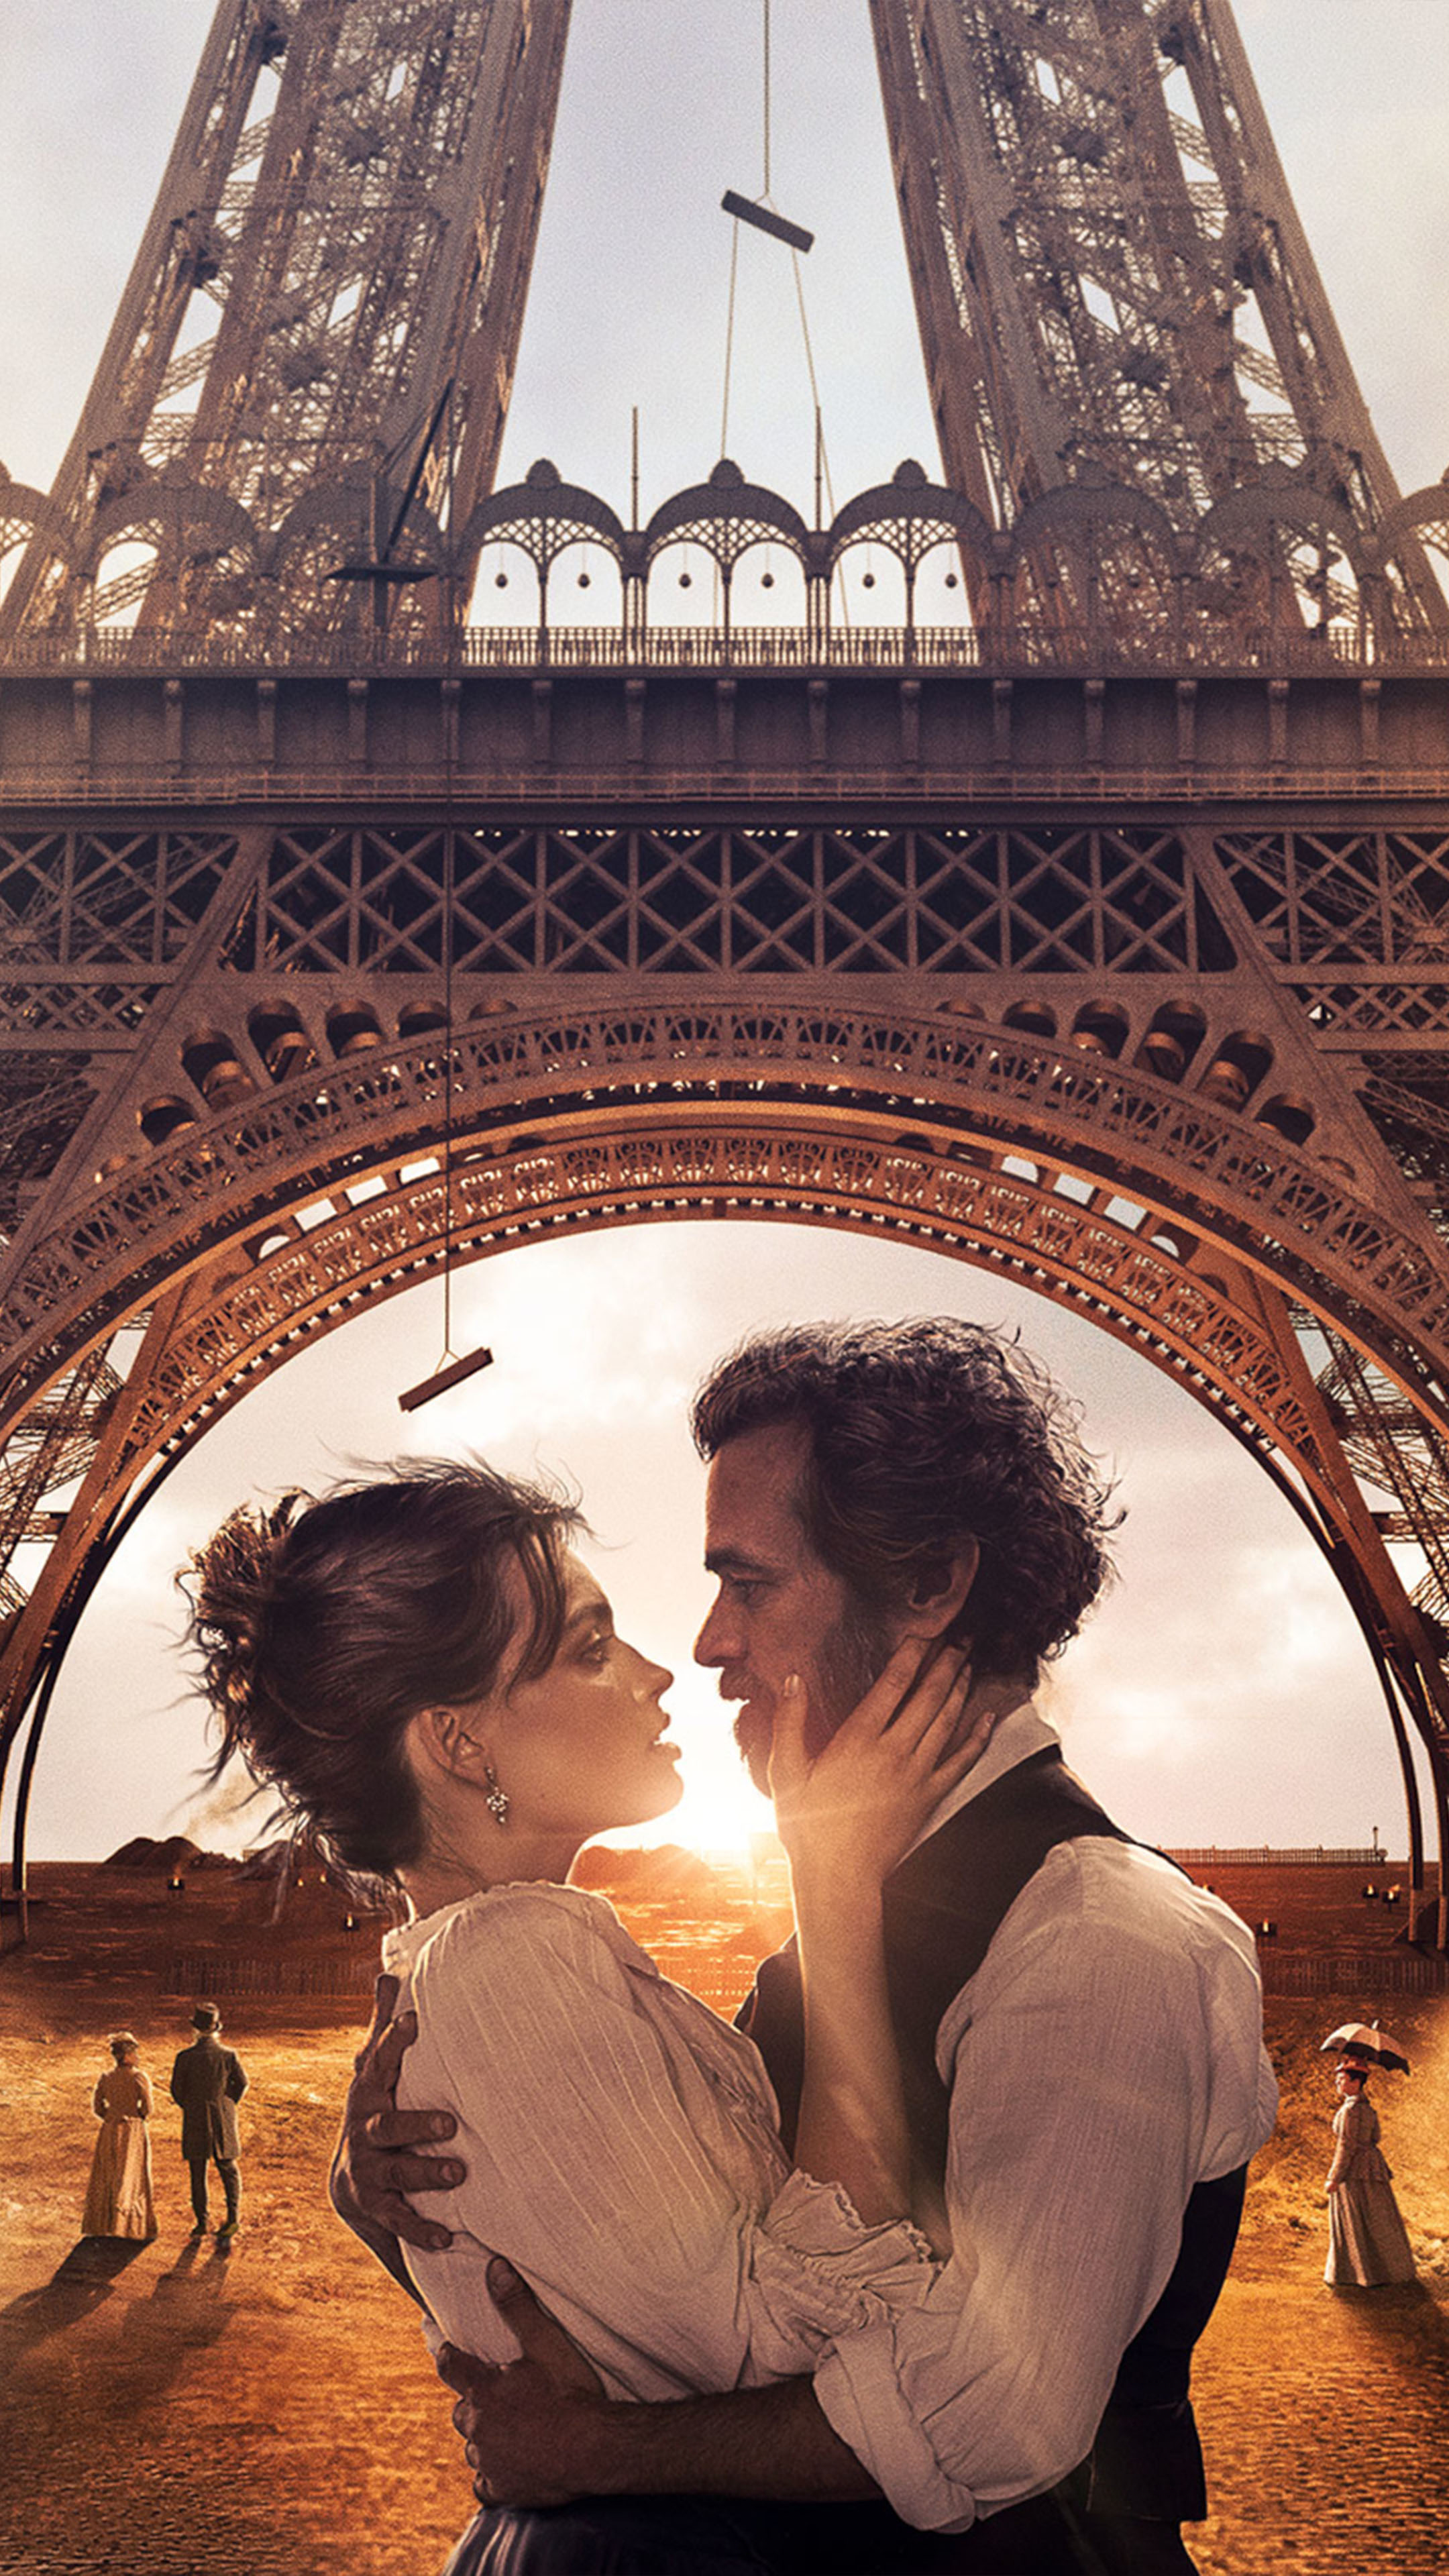 Romain-Duris-Emma-Mackey-In-Eiffel-2021-4K-Ultra-HD-Mobile-Wallpaper.jpg